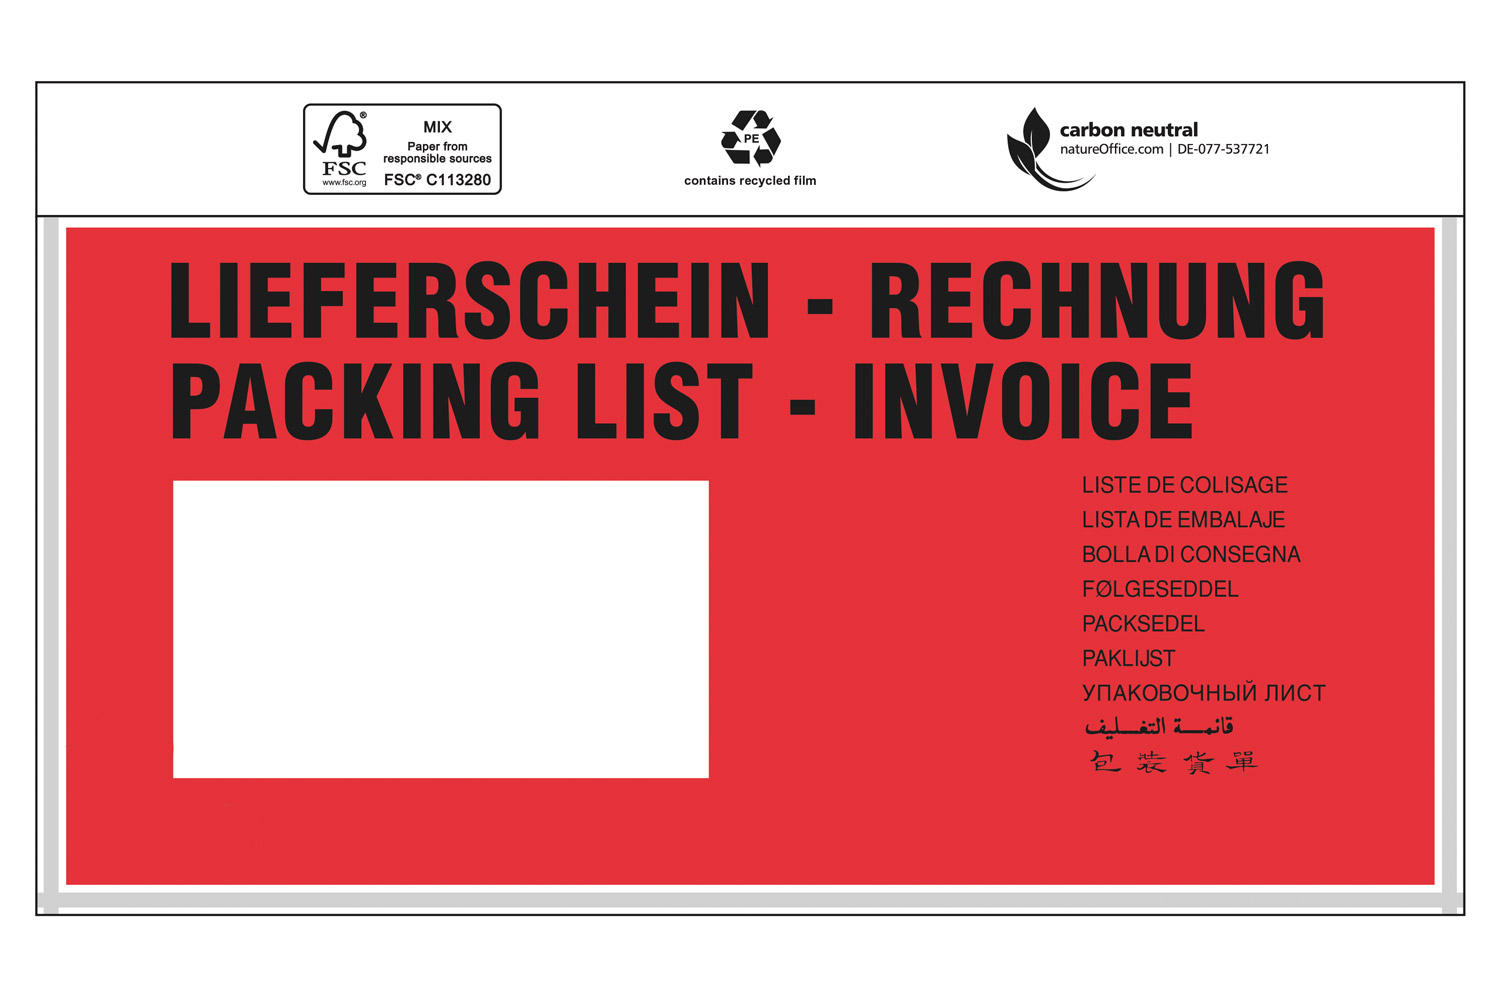 Dokumententasche Premium, DIN lang, Liefersch./Rechn., ca. 175x118 mm